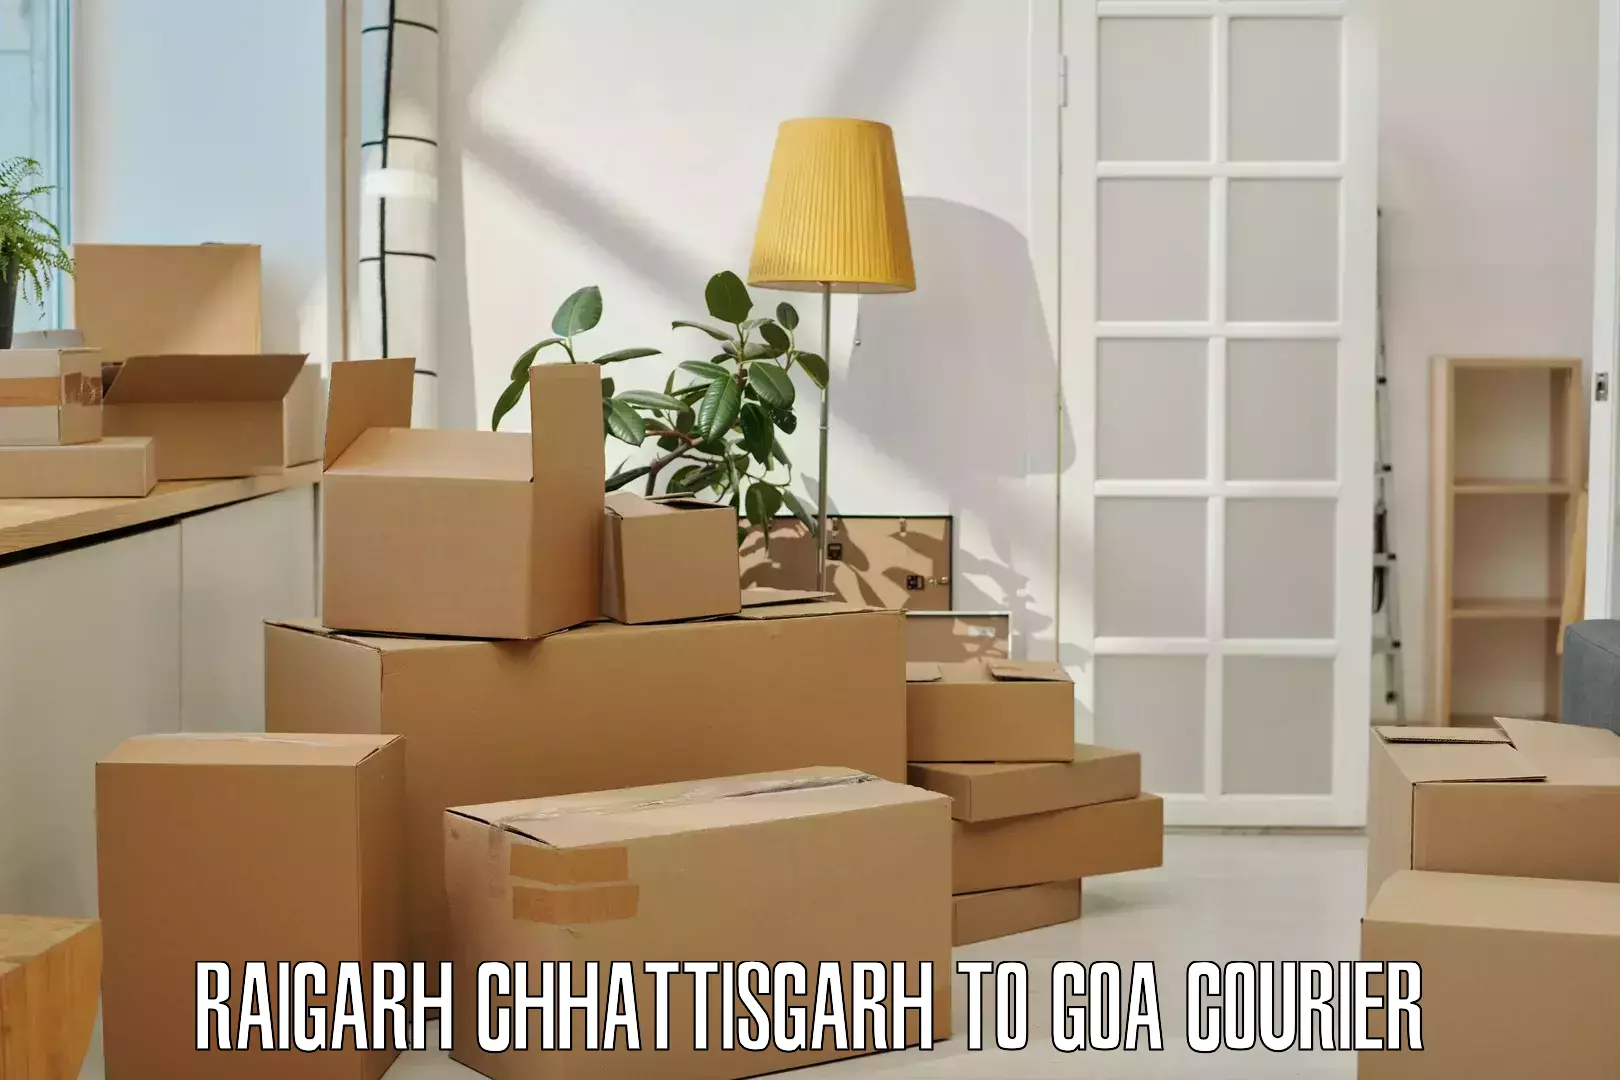 Efficient freight service Raigarh Chhattisgarh to Bicholim